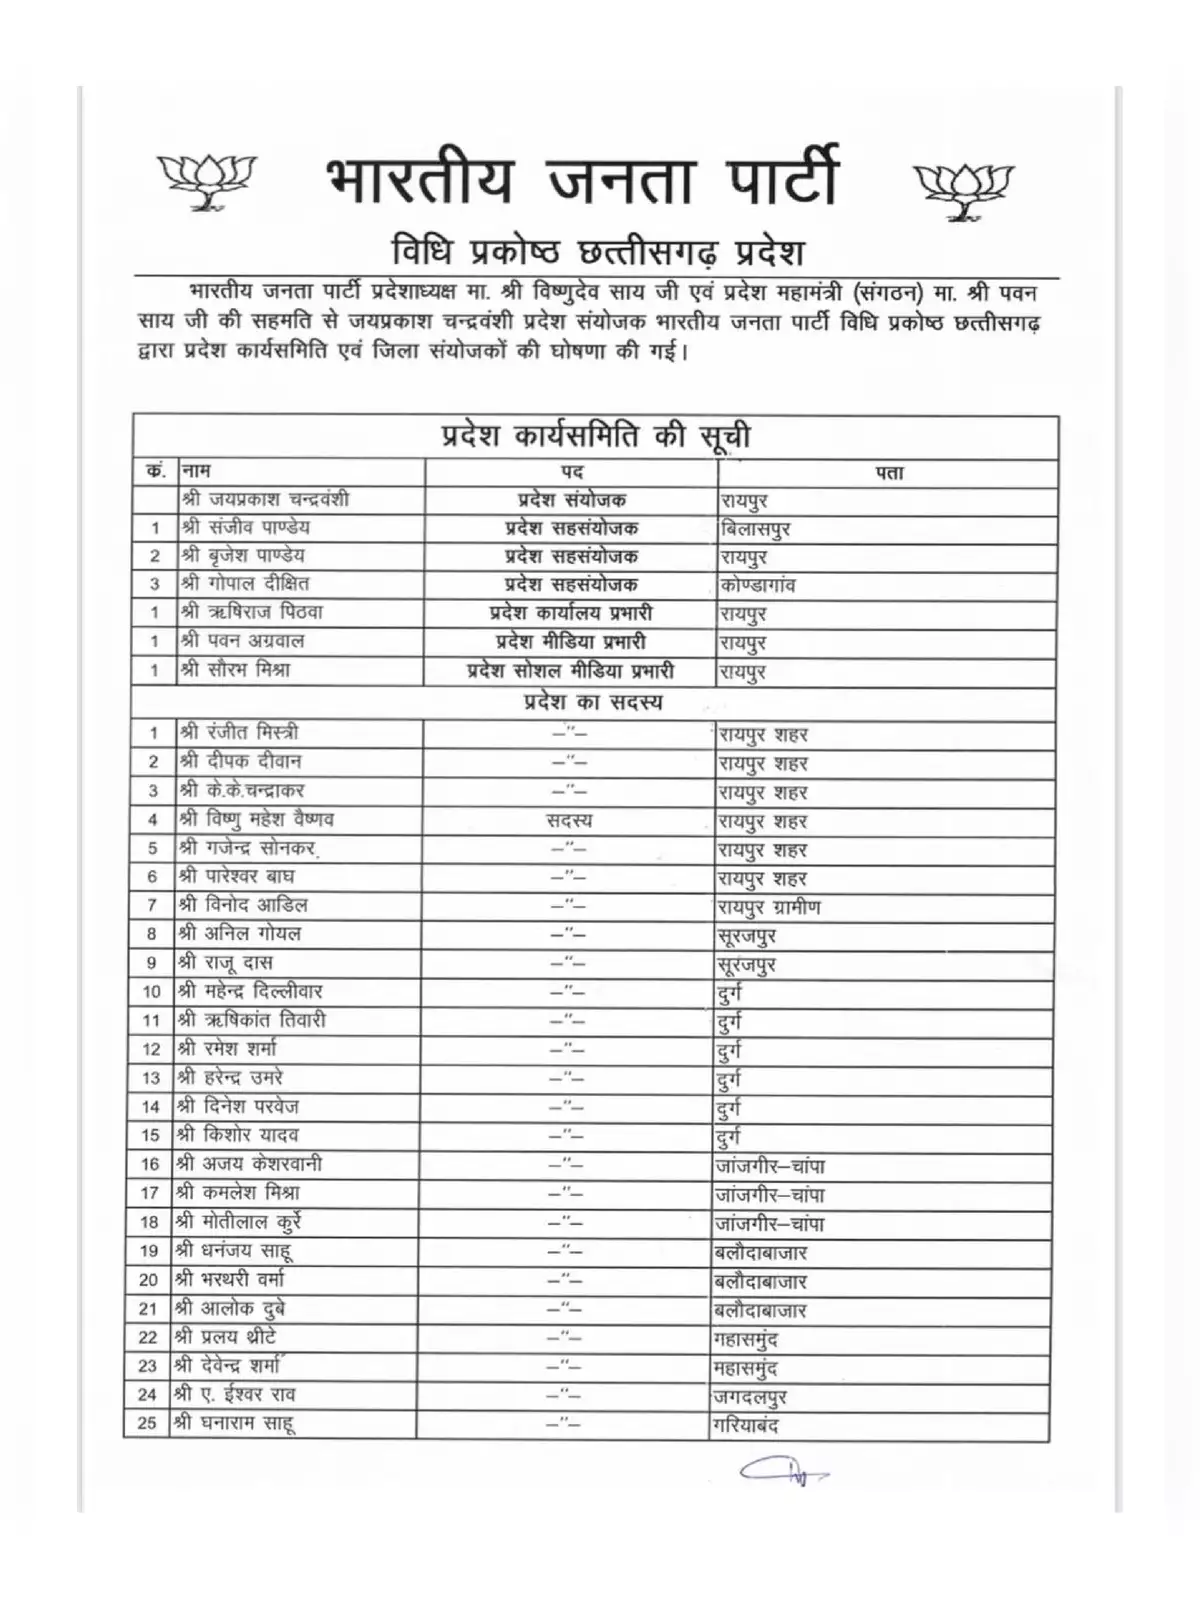 BJP Working Committee Members List Chhattisgarh 2021